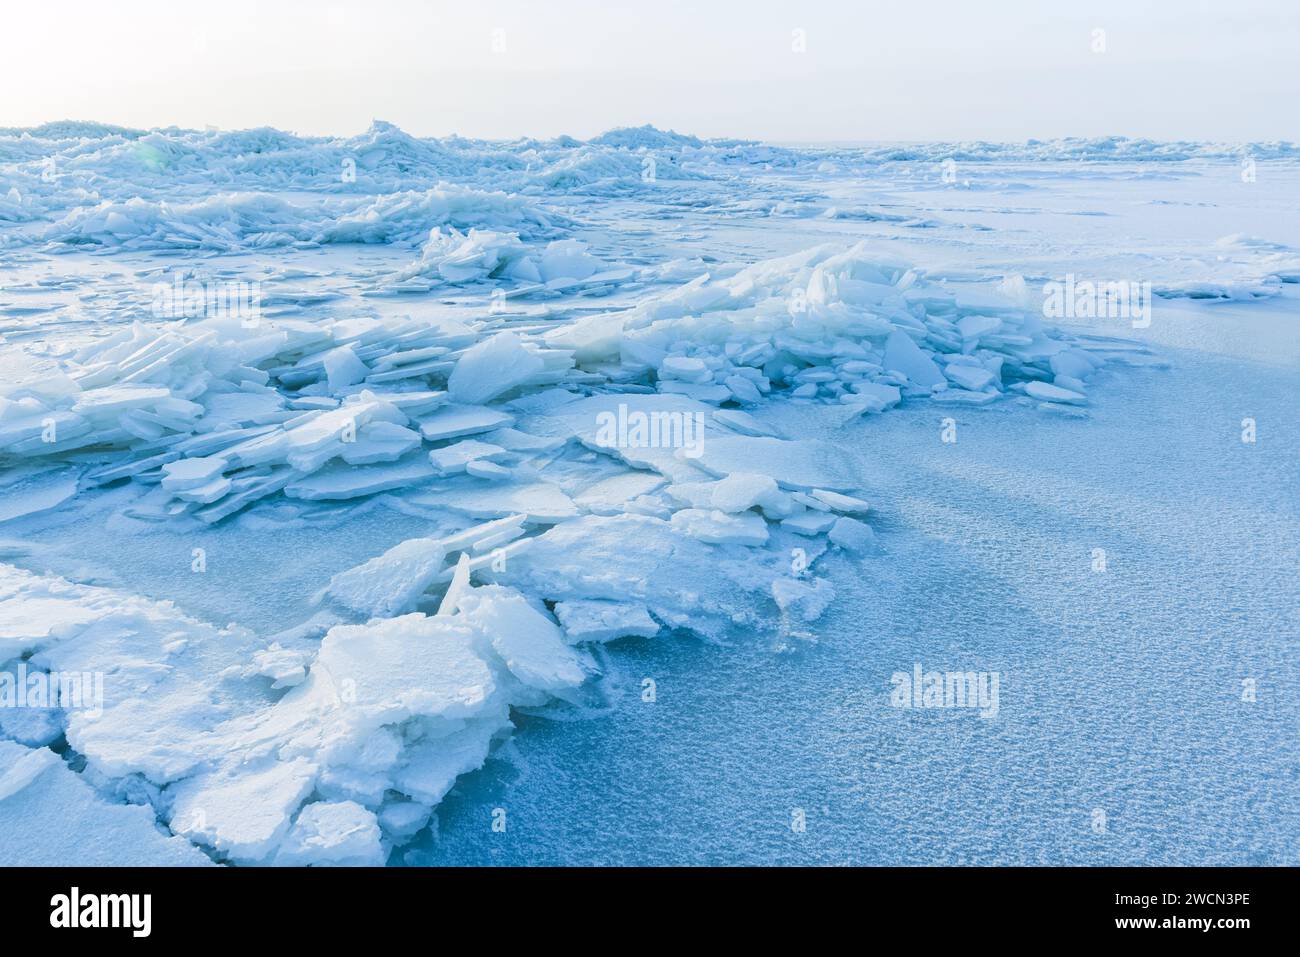 Paysage d'hiver avec mer Baltique gelée sur une journée d'hiver ensoleillée, bourdonnements de glace couverts de neige Banque D'Images